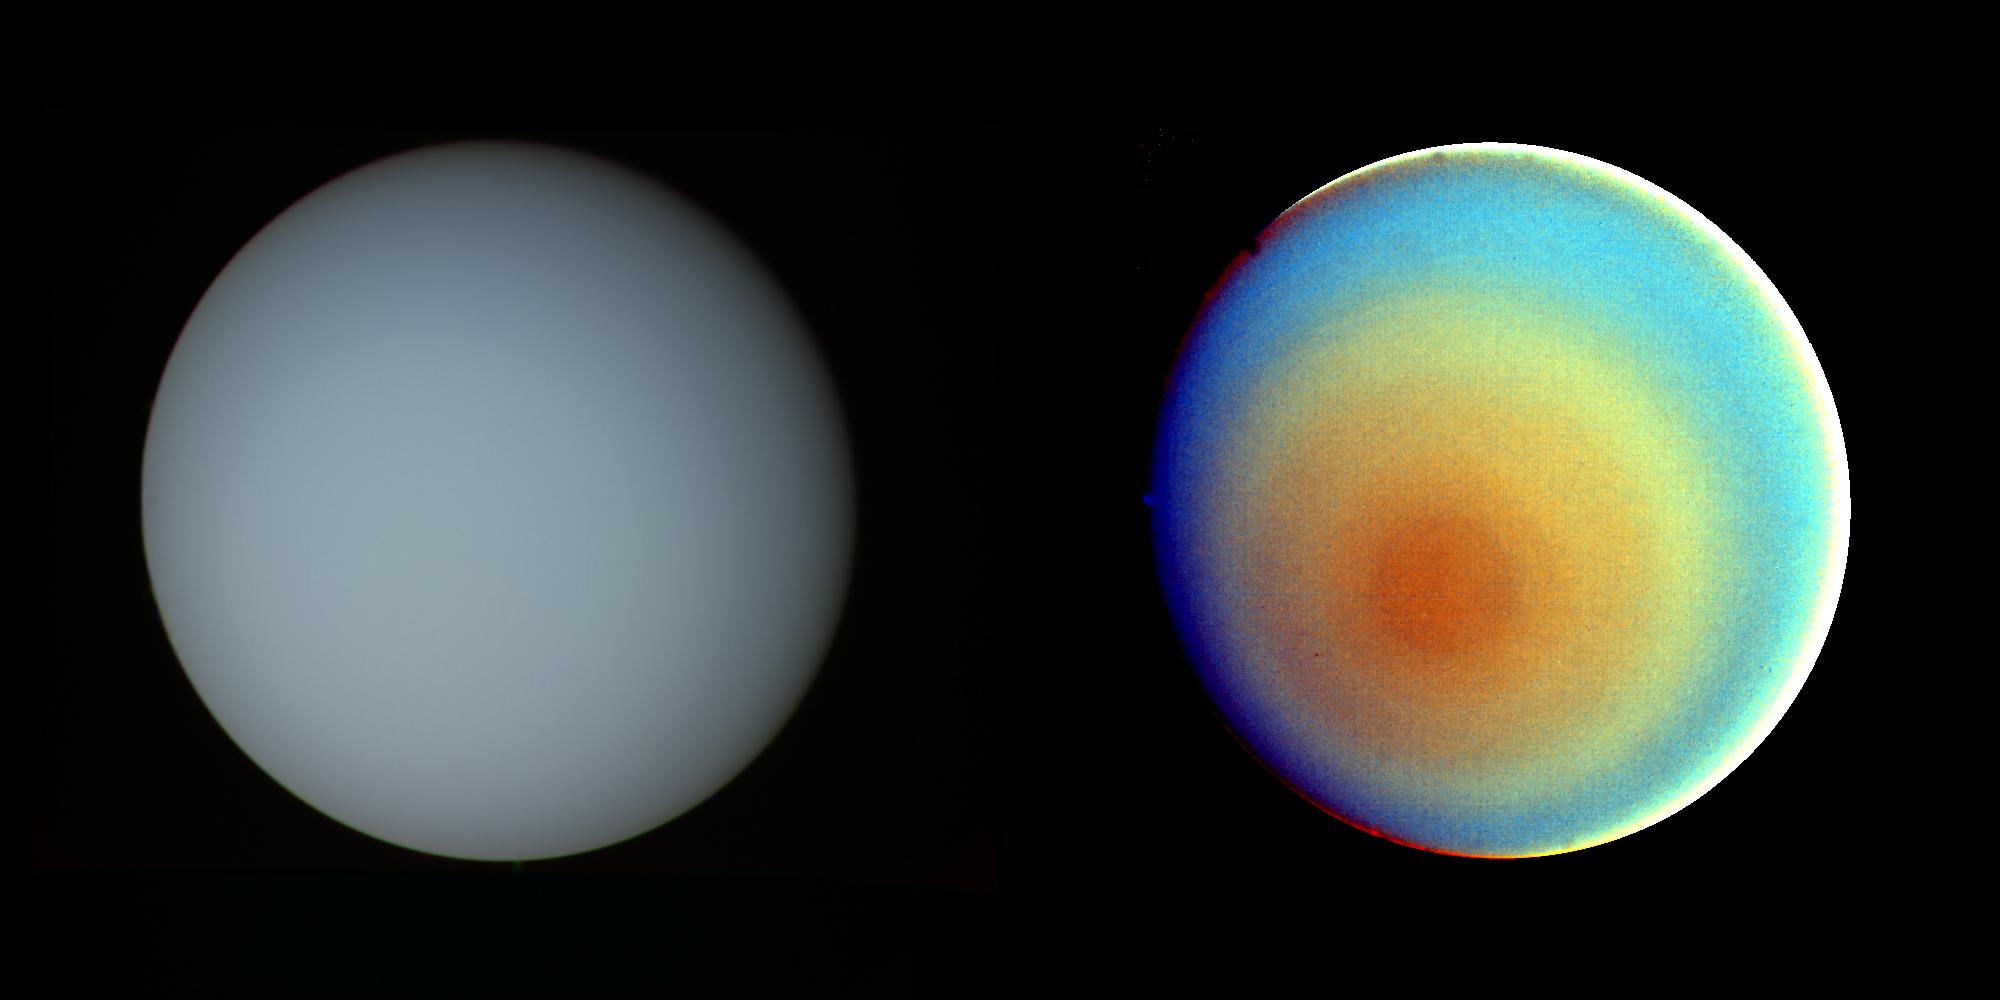 False-color and contrast-enhanced image of Uranus